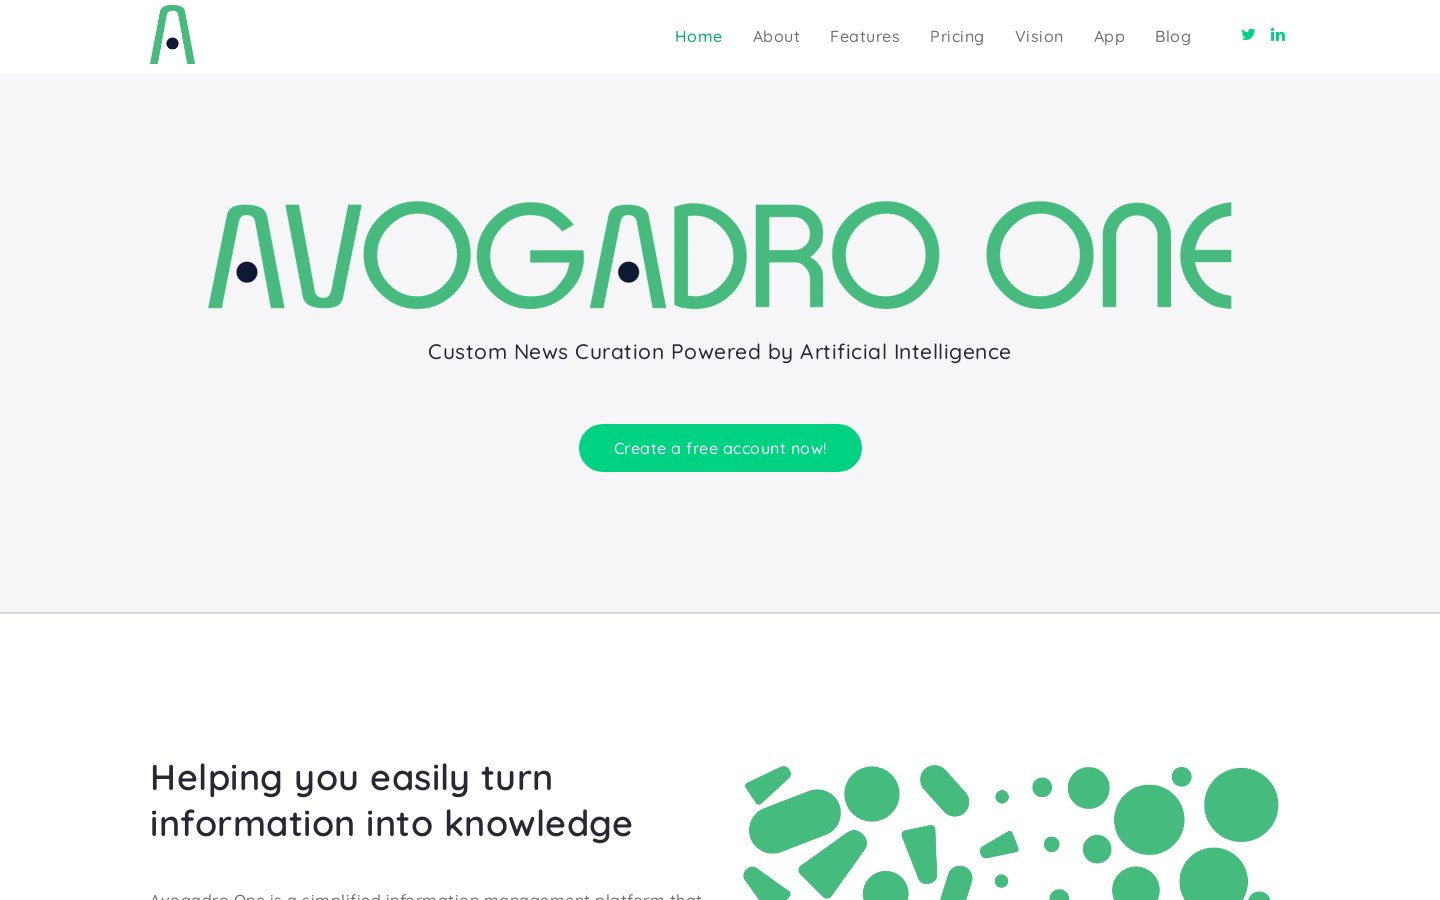 Avogadro One